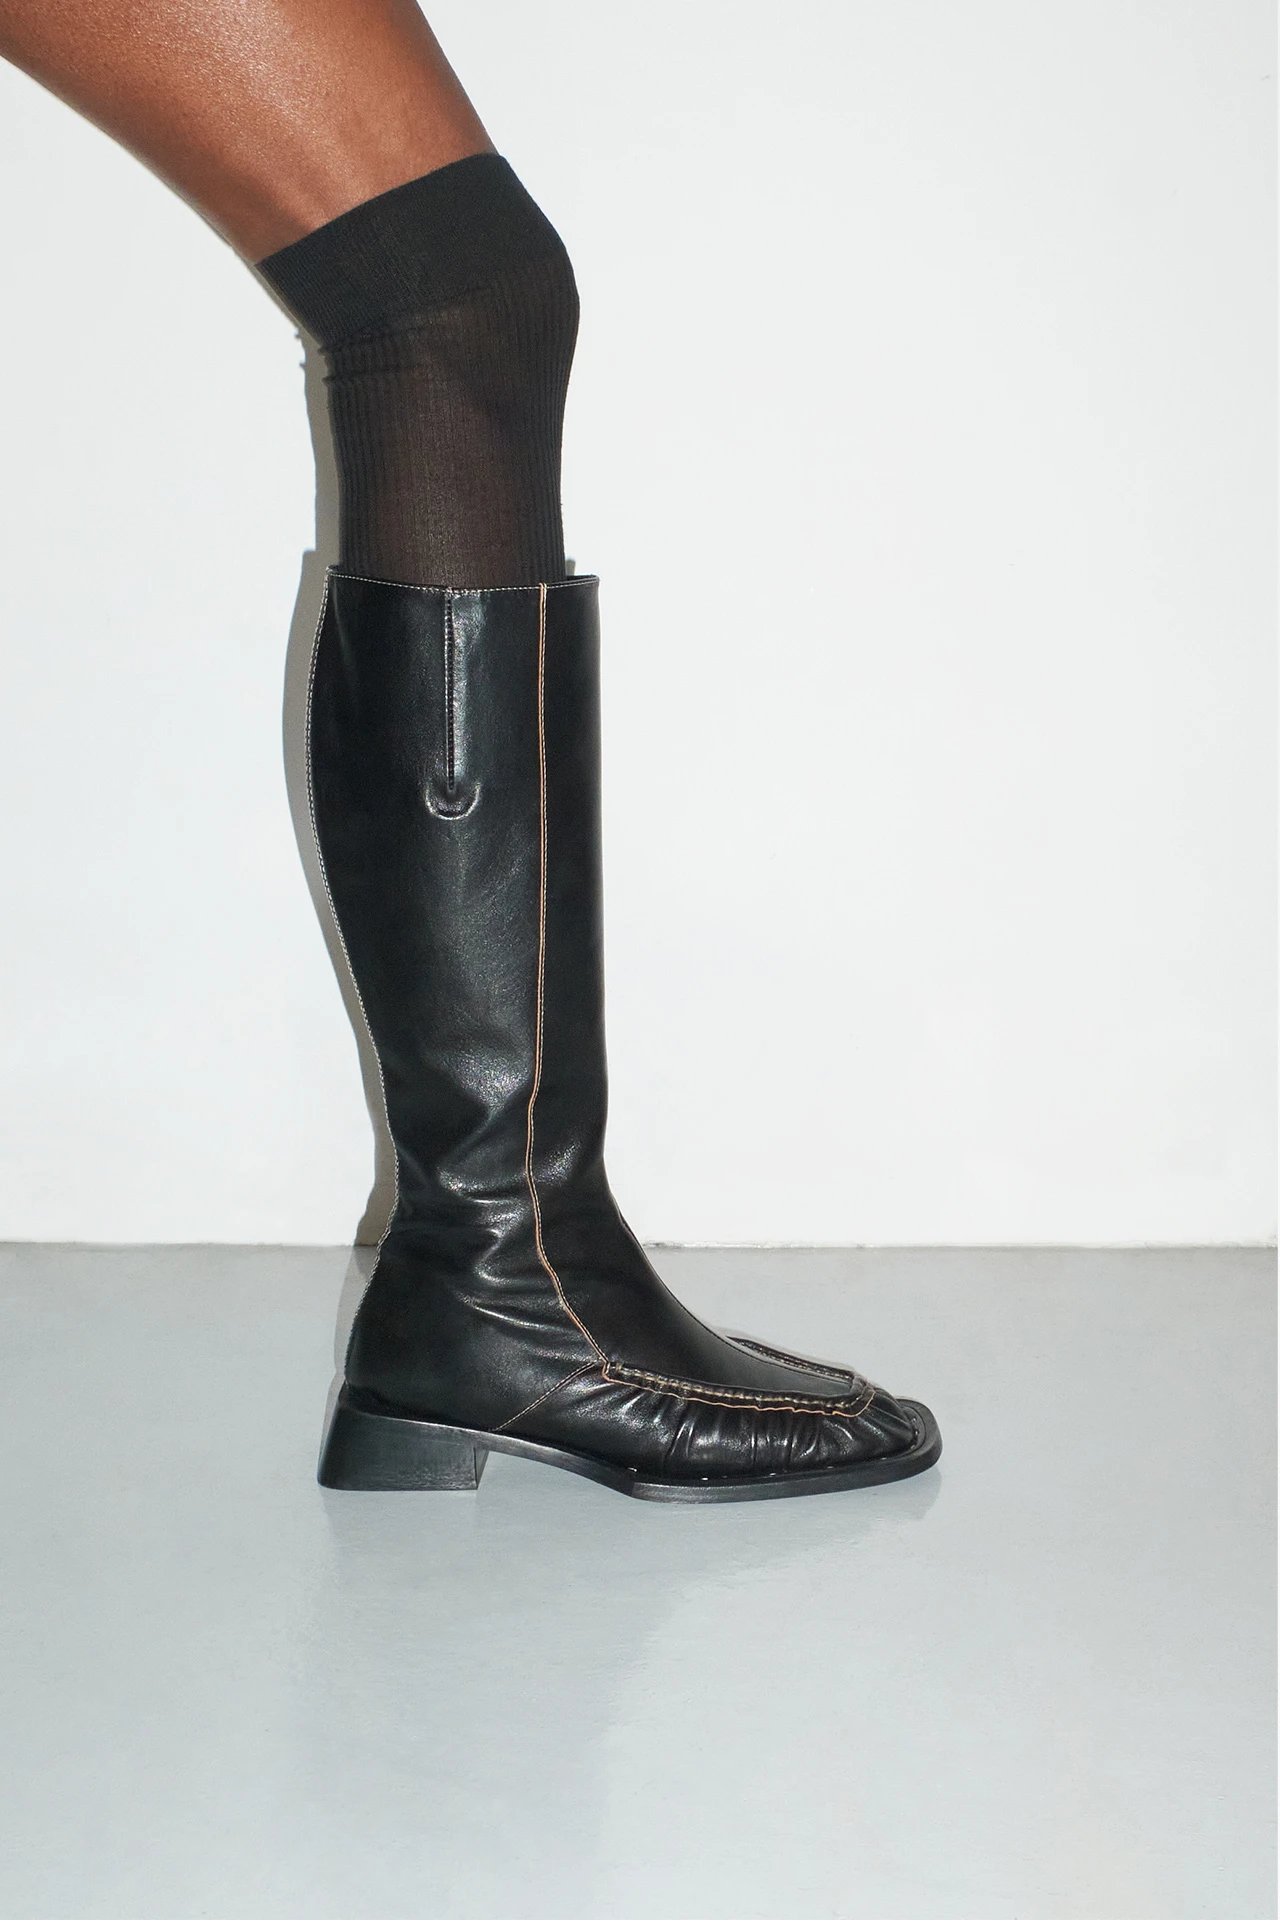 EC-miista-pats-black-boots-02